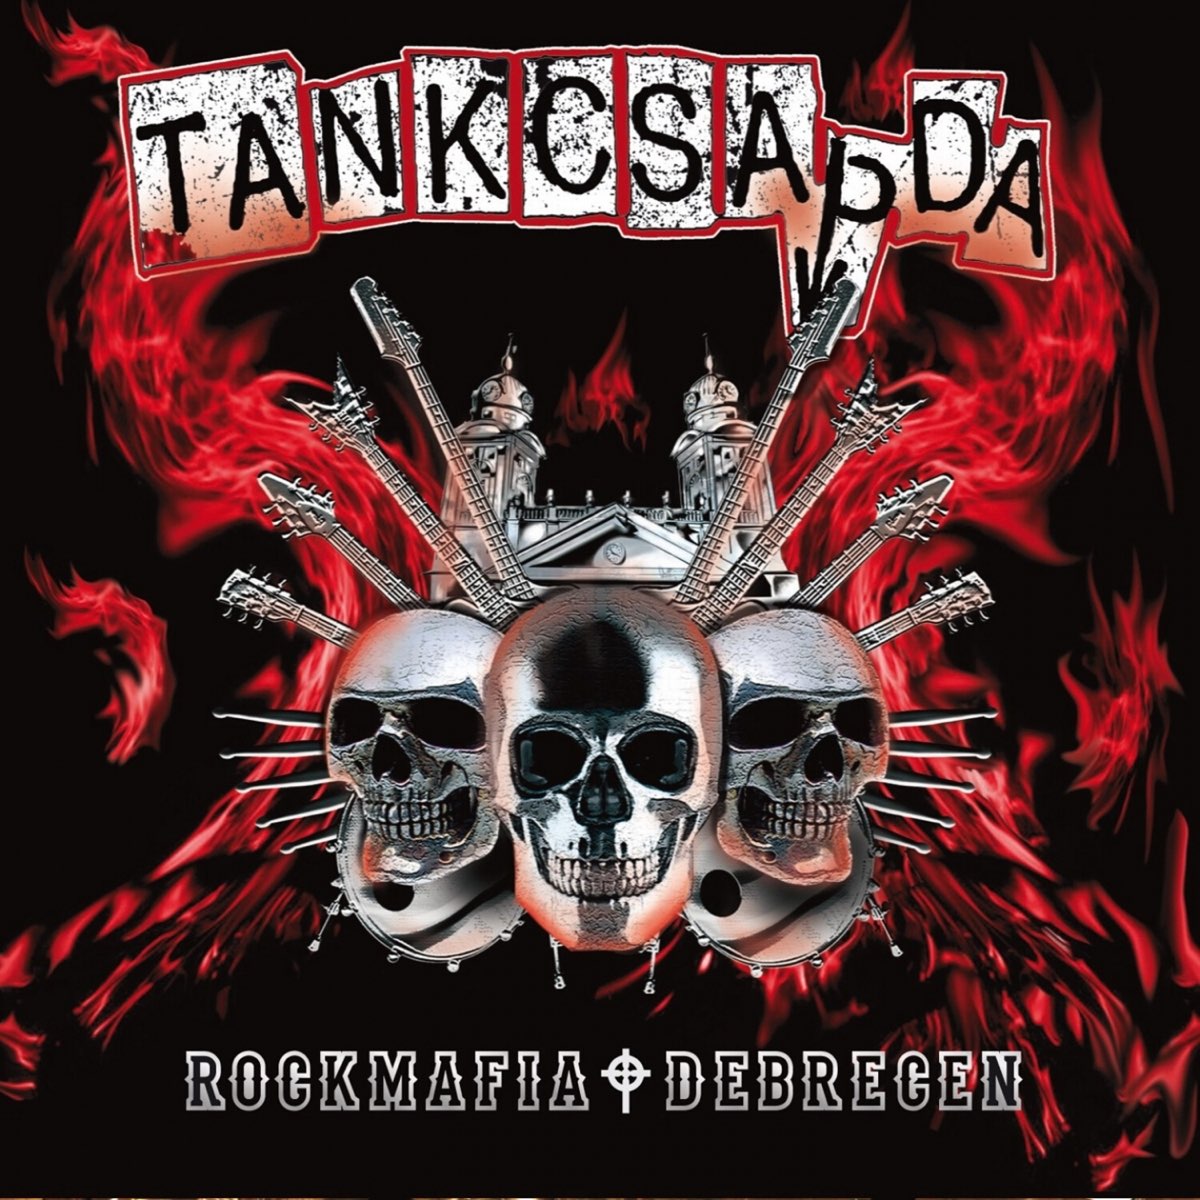 Rockmafia Debrecen (Remastered) – Album von Tankcsapda – Apple Music